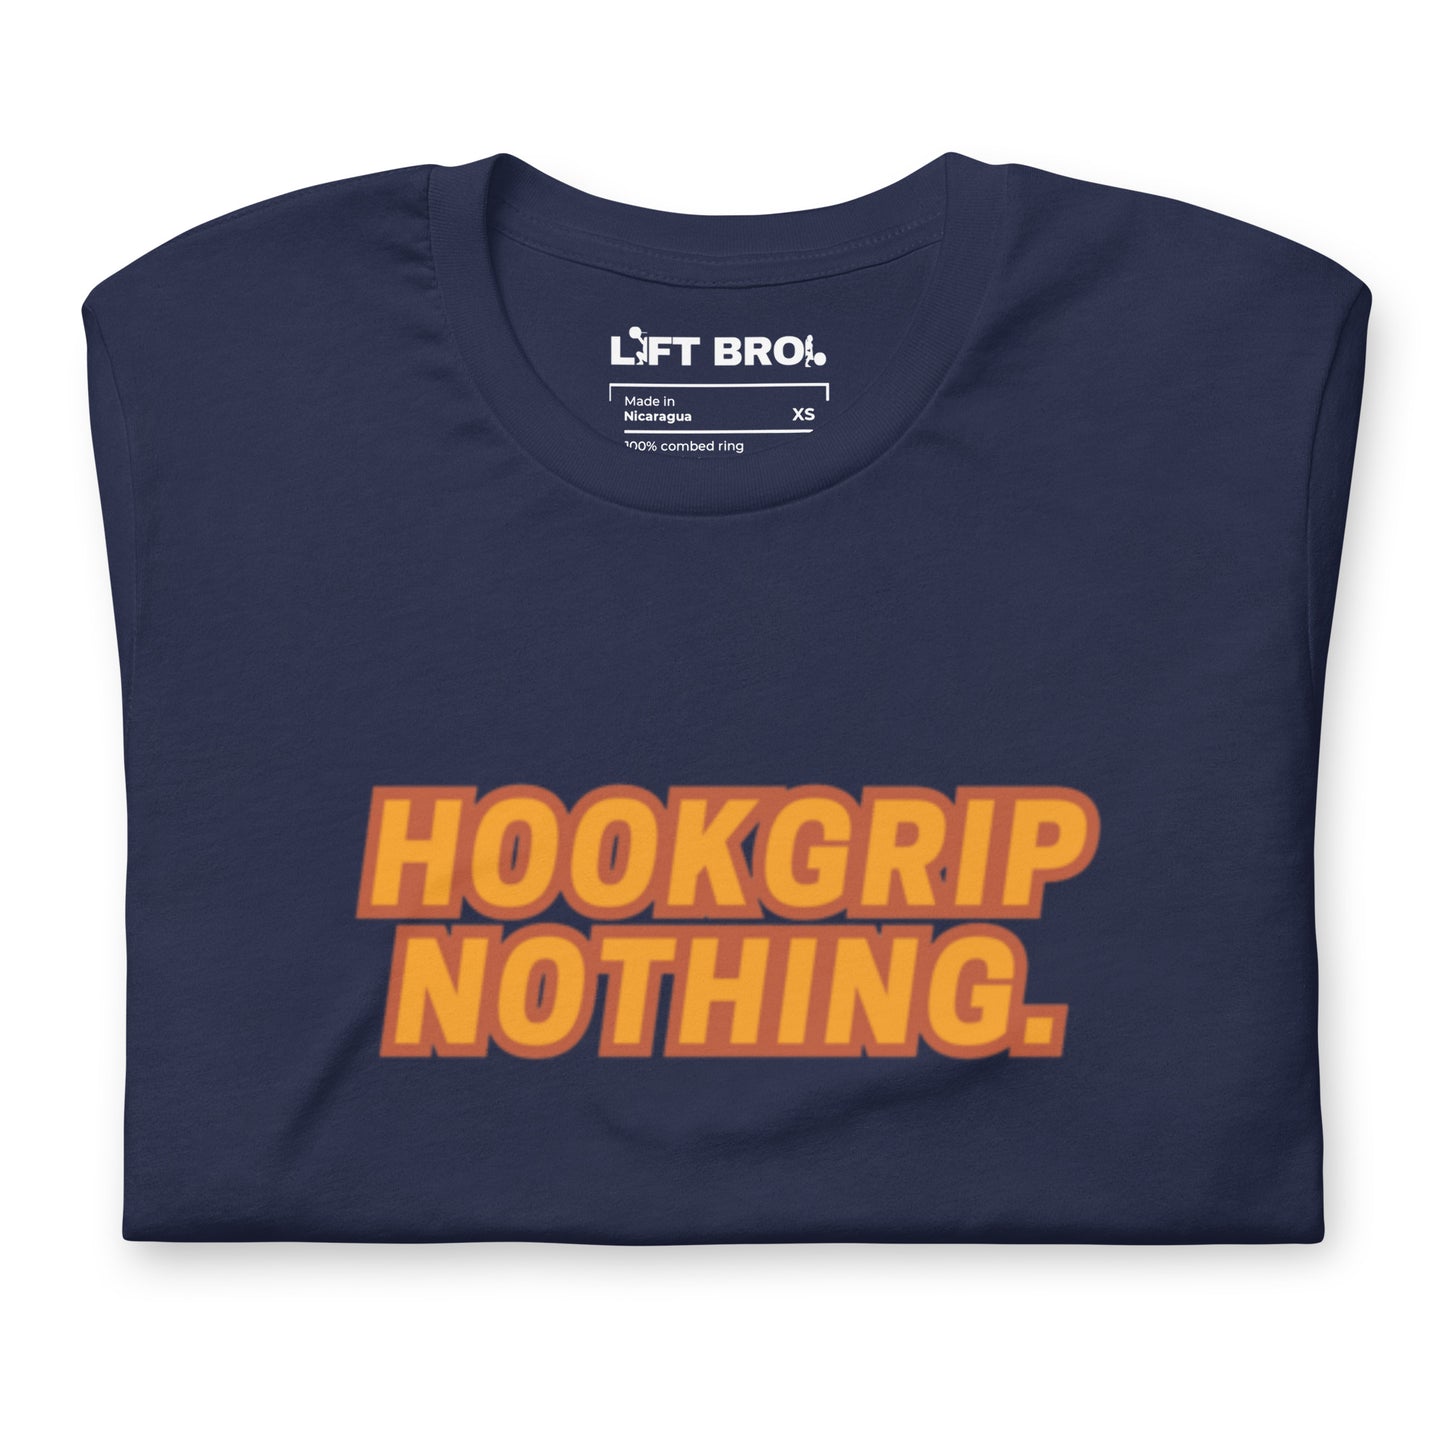 Hookgrip Nothing. Shirt